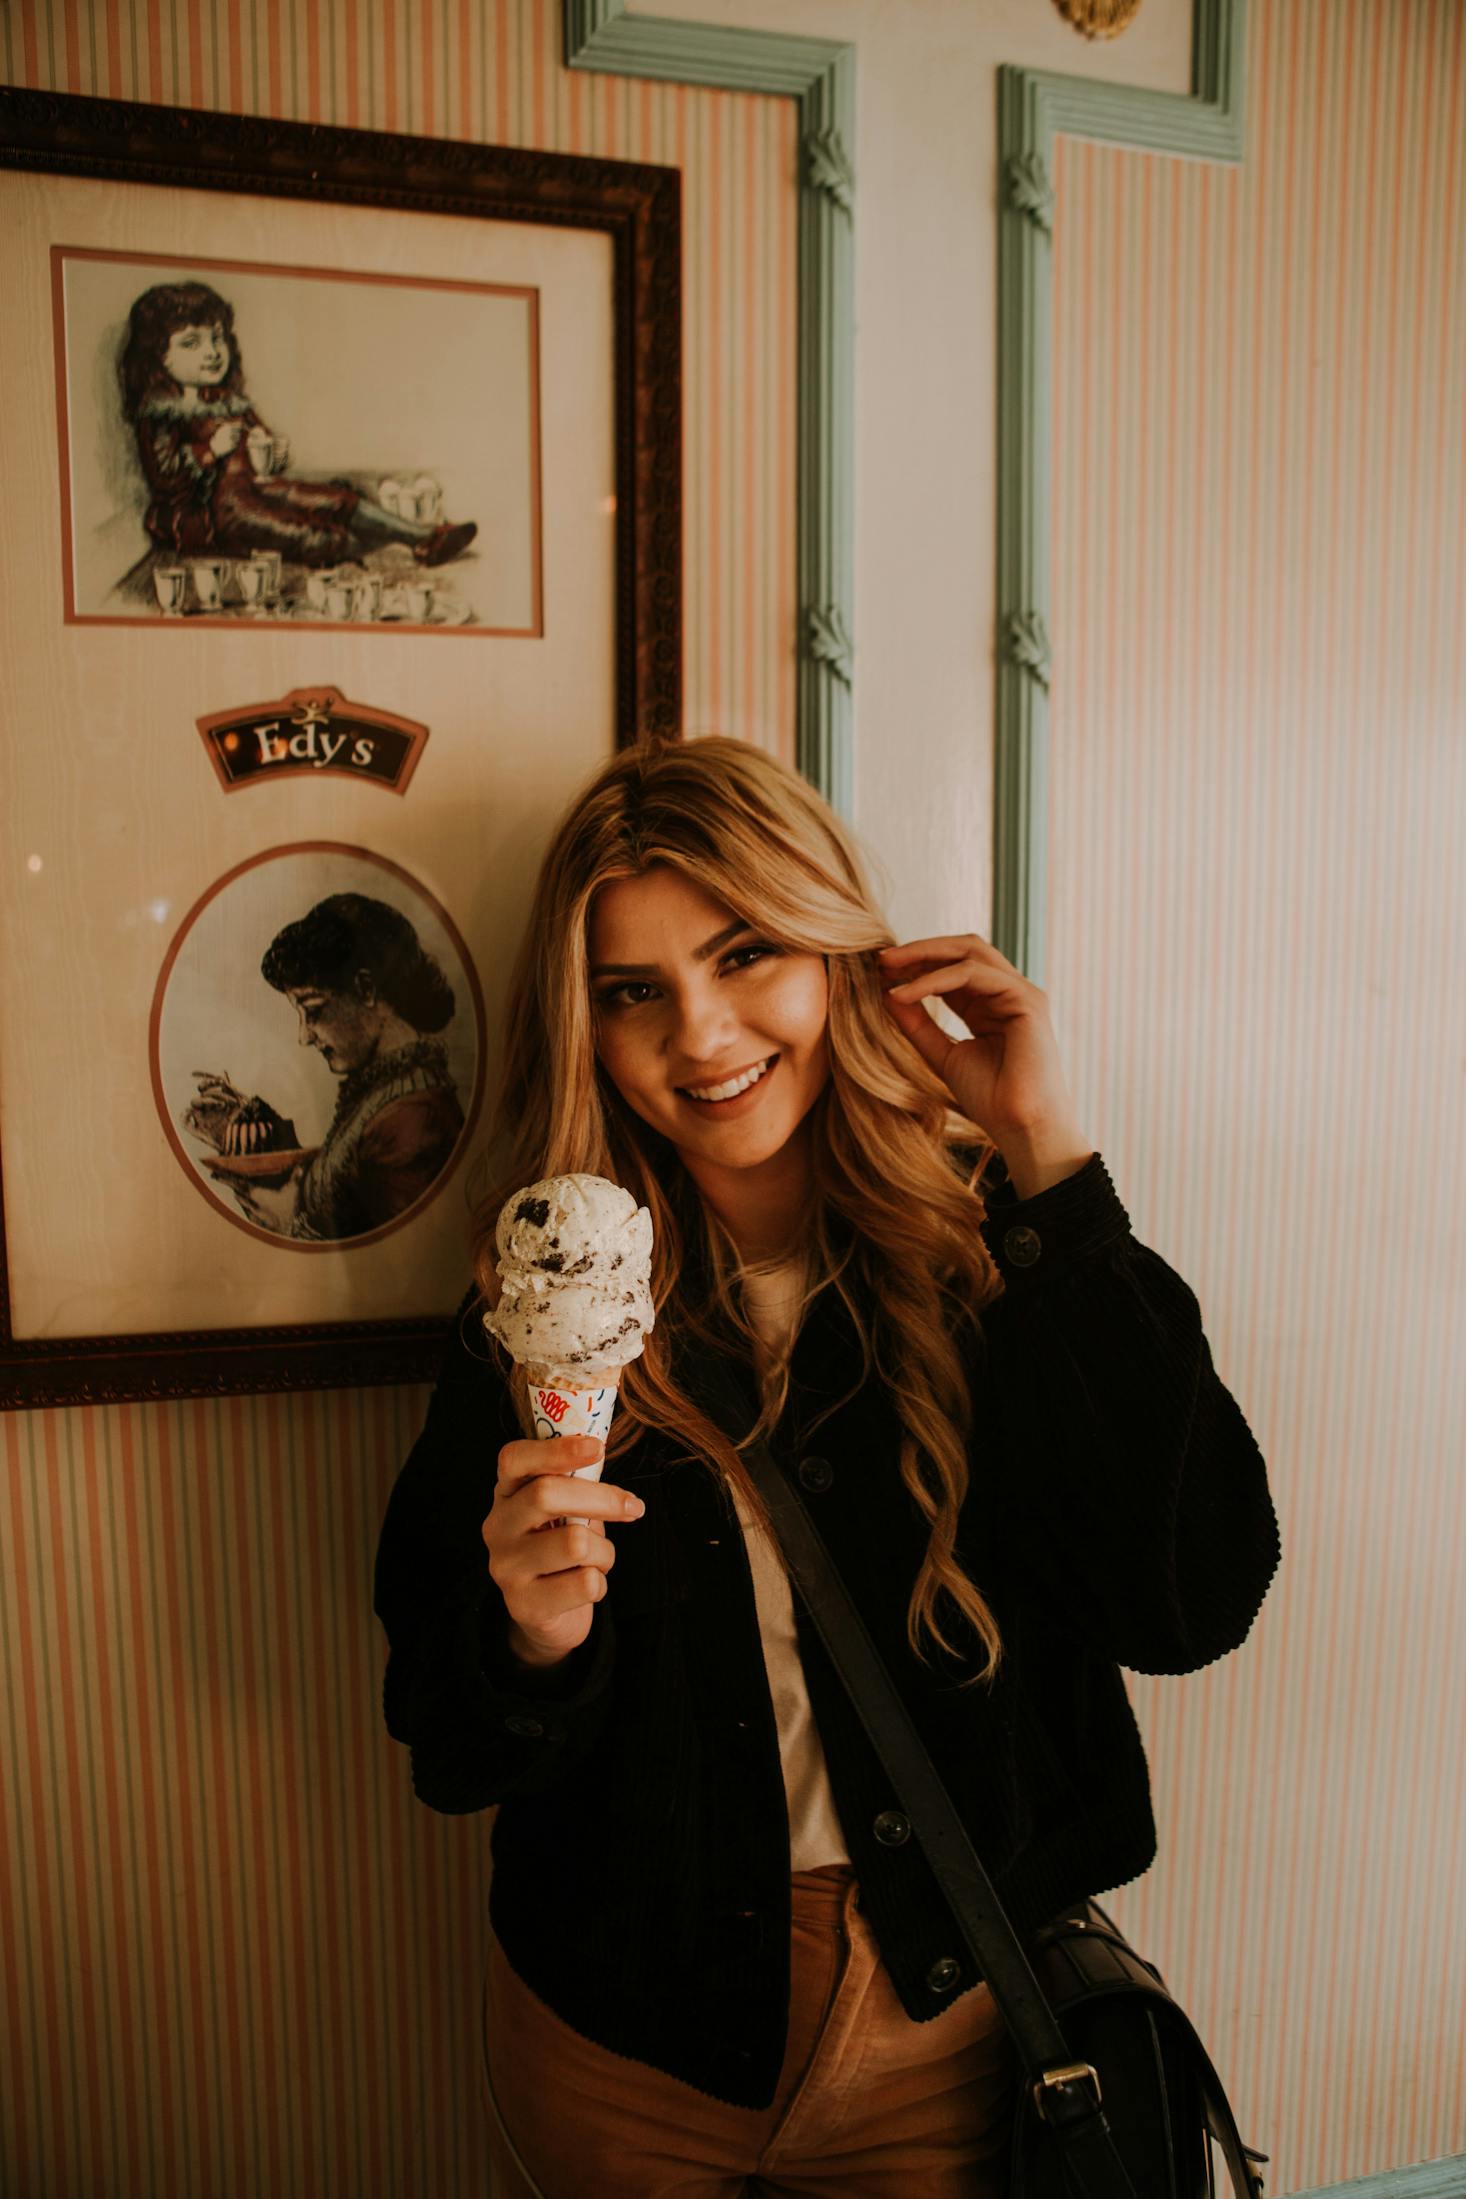 Ice cream in Orlando